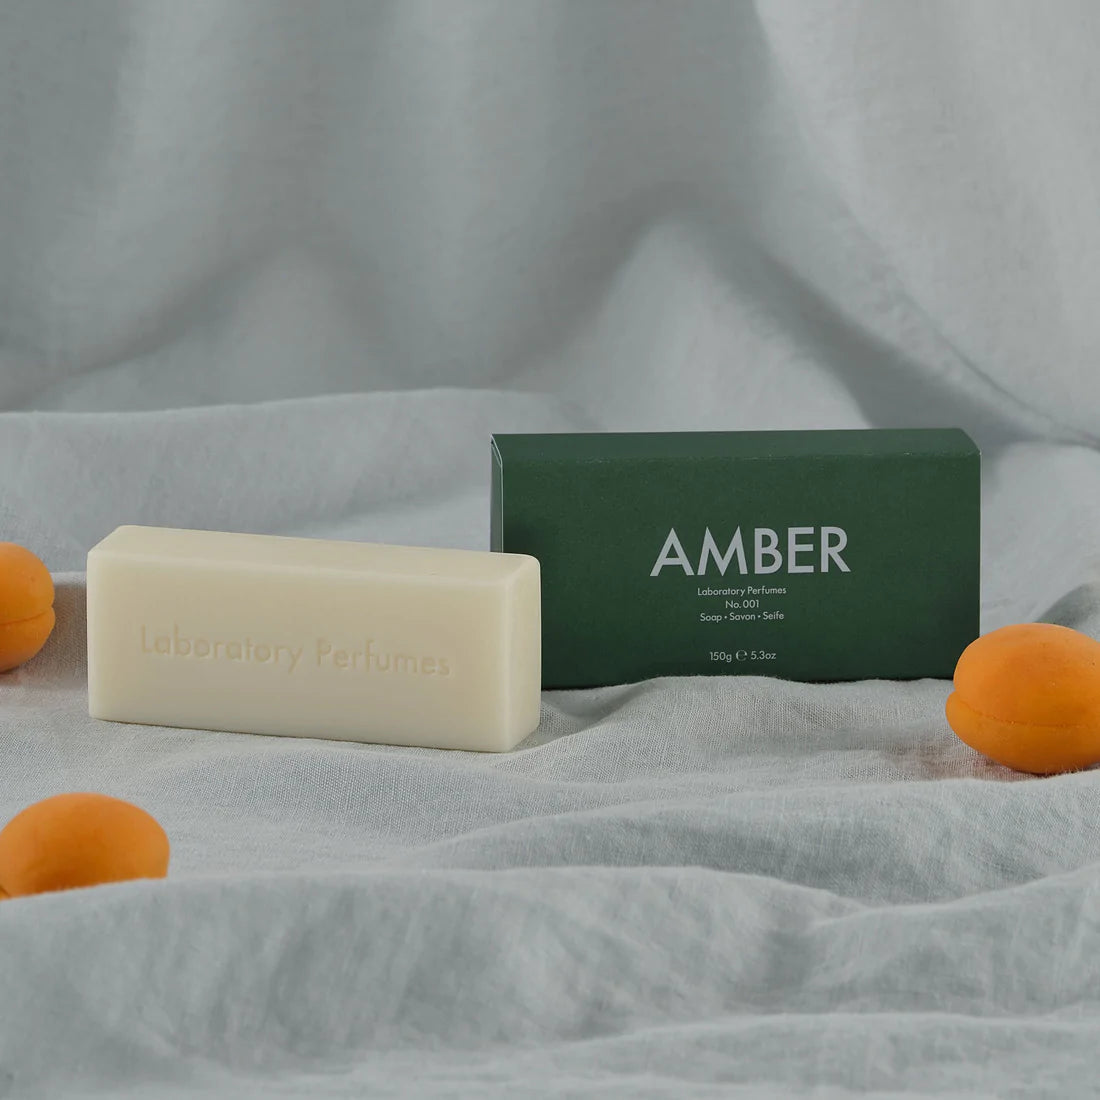 Laboratory Perfumes Amber Soap 150g Bar